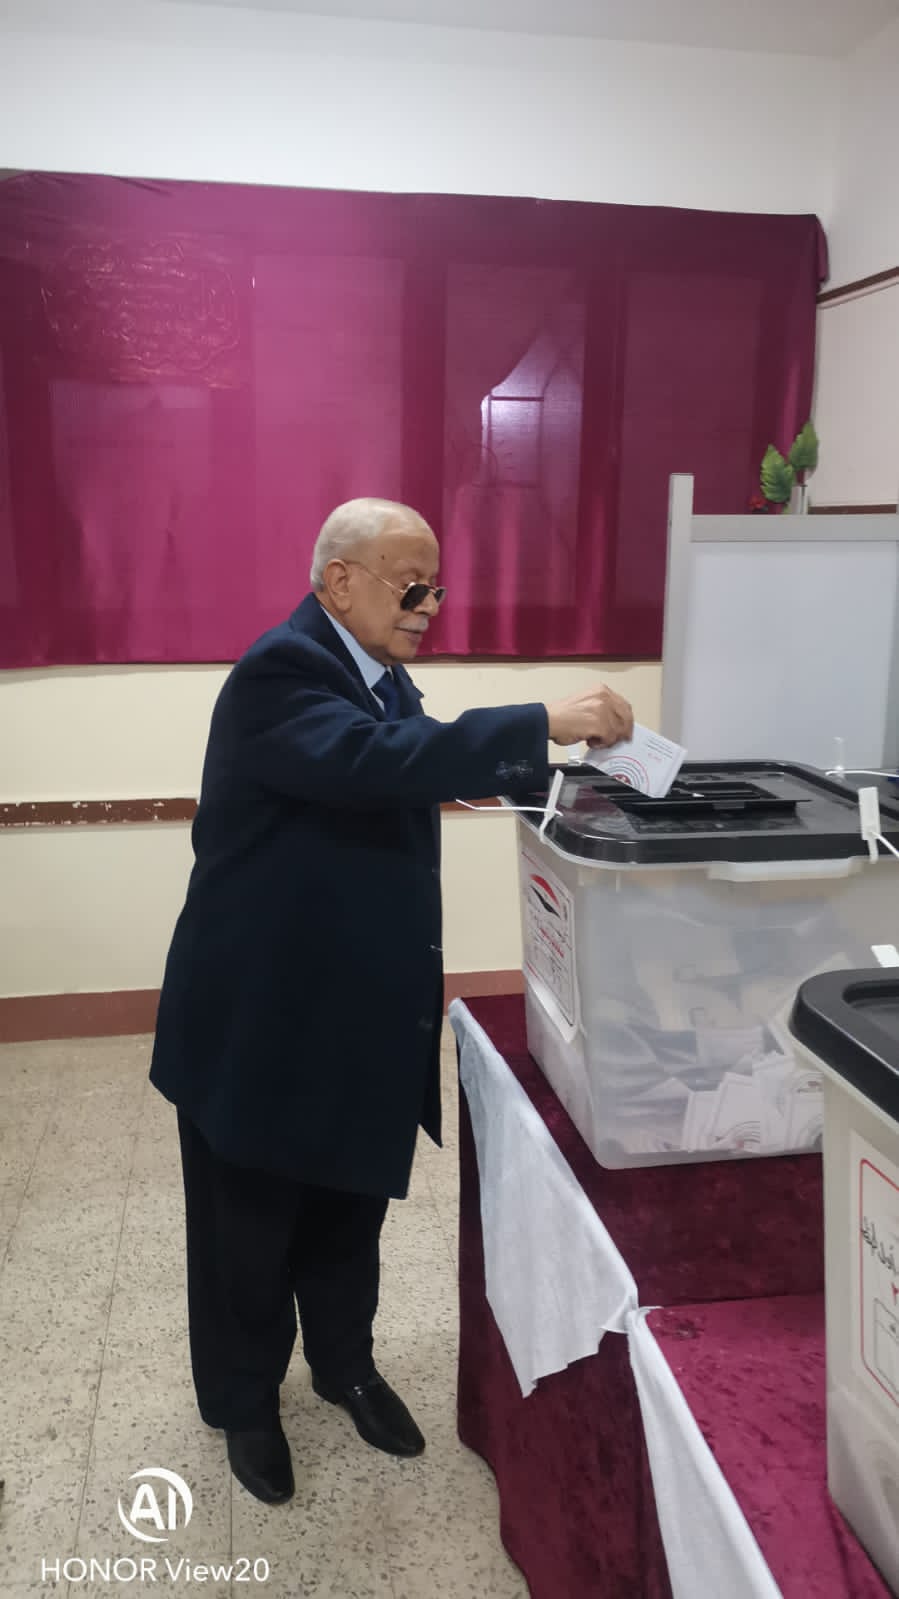 رئيس محكمة استئناف طنطا يدلي بصوته في الانتخابات الرئاسية

